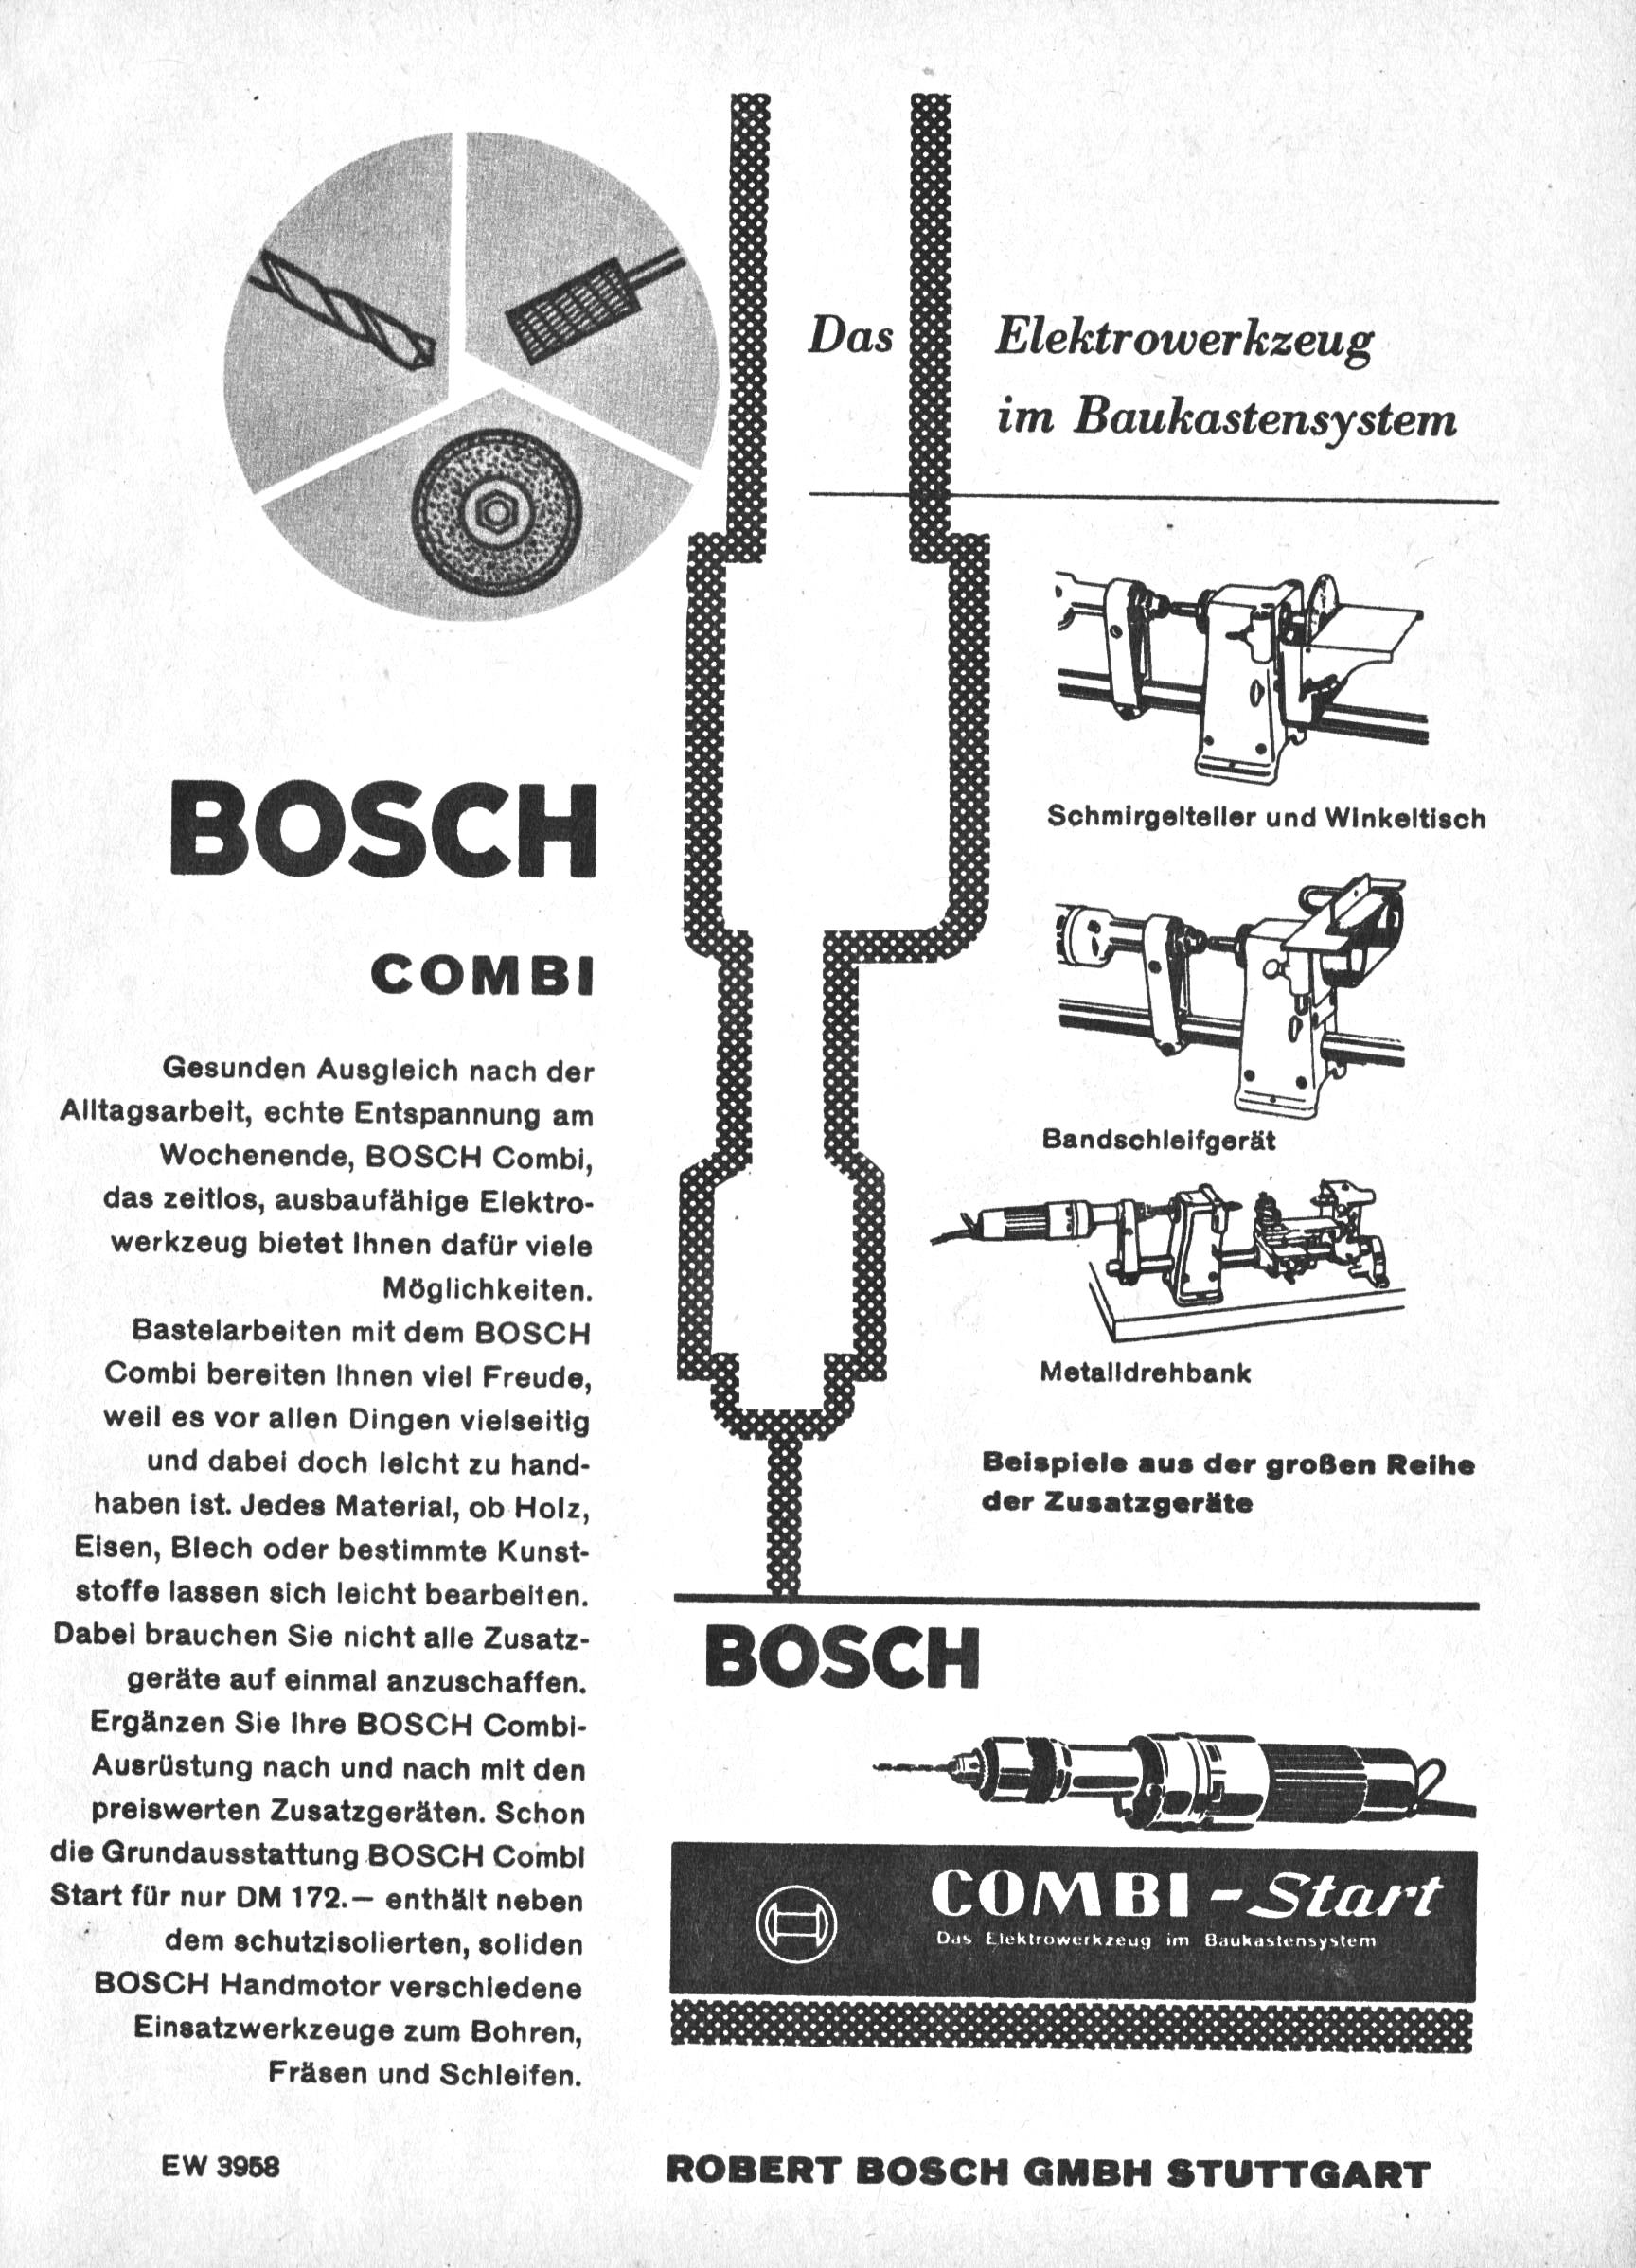 Bosch 1959 H2.jpg